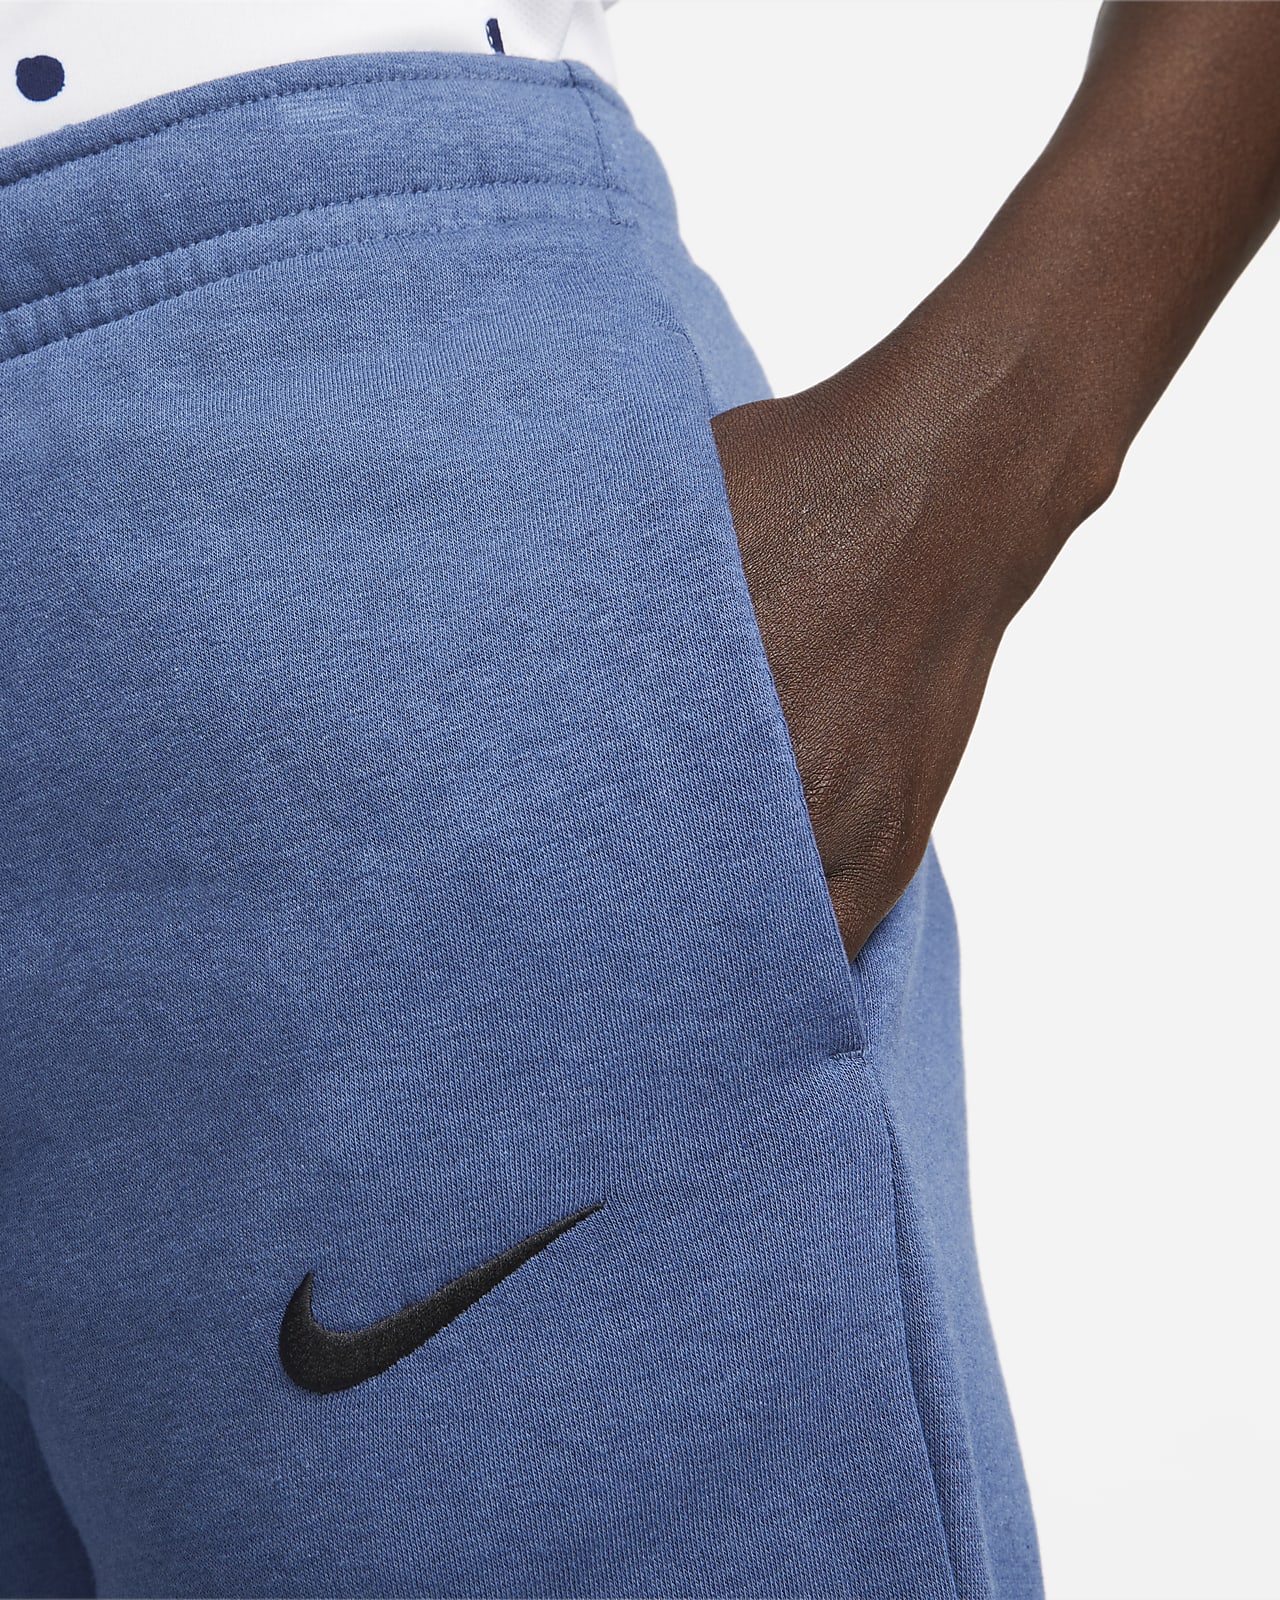 Nike Sportswear Club Fleece Women's Mid-Rise Logo Joggers